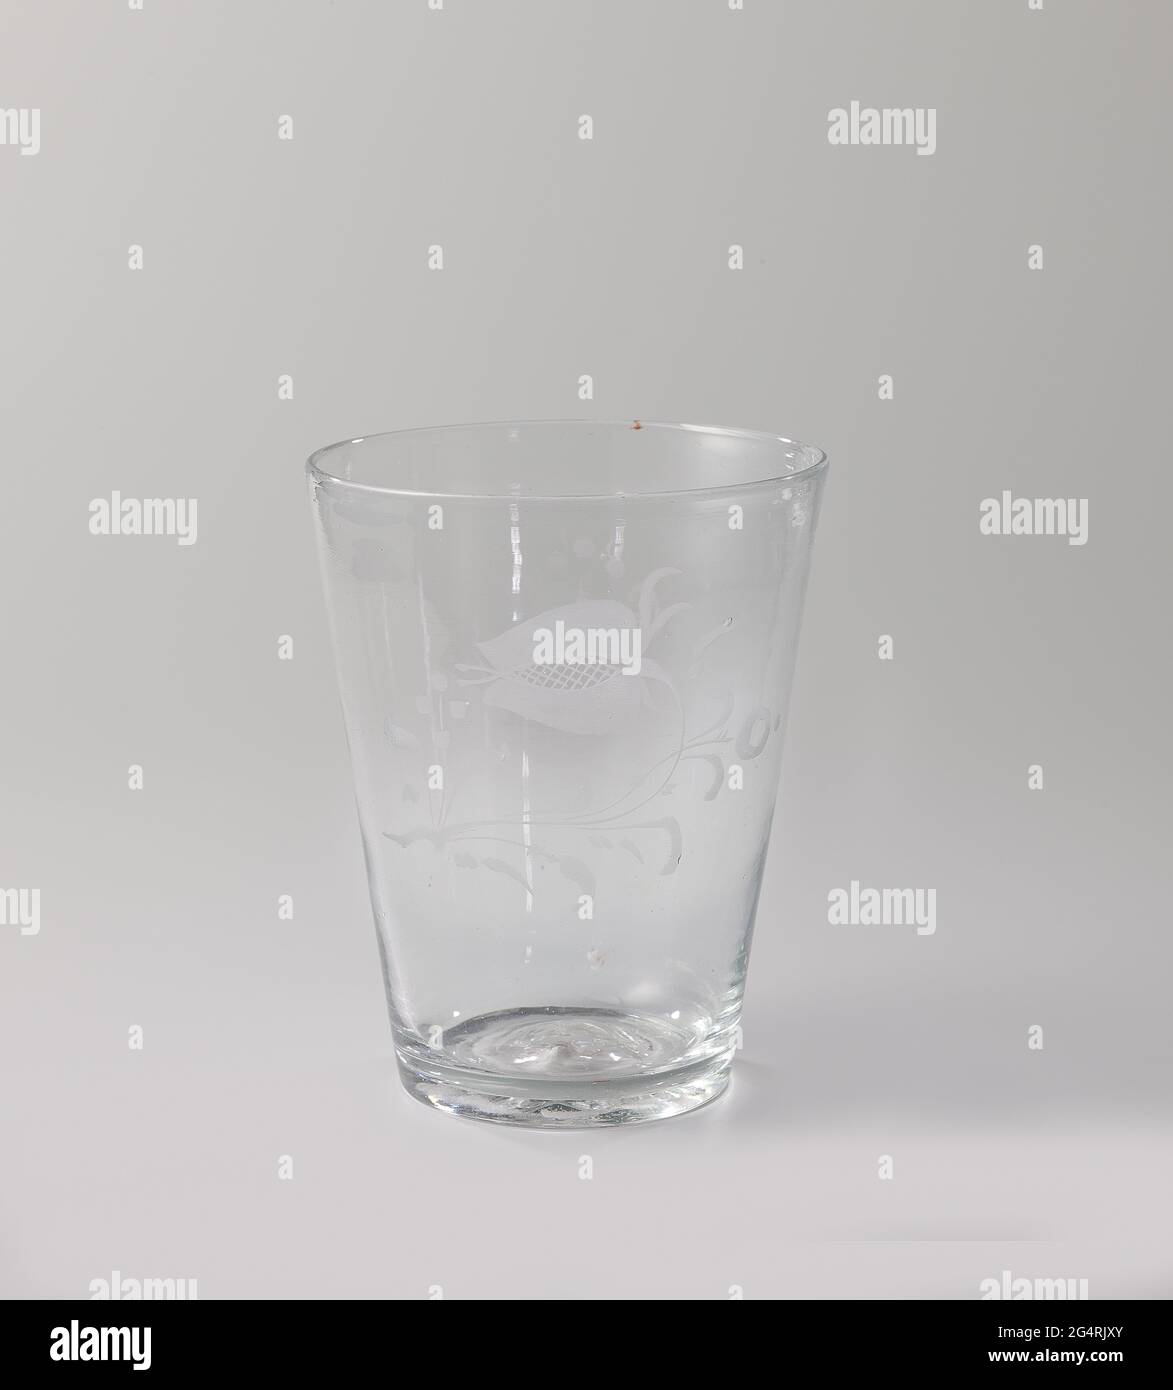 Copa con una flor. Taza de vidrio transparente, incoloro, cónico, sobre el que una flor muy simple con el corte de la roulet. Foto de stock